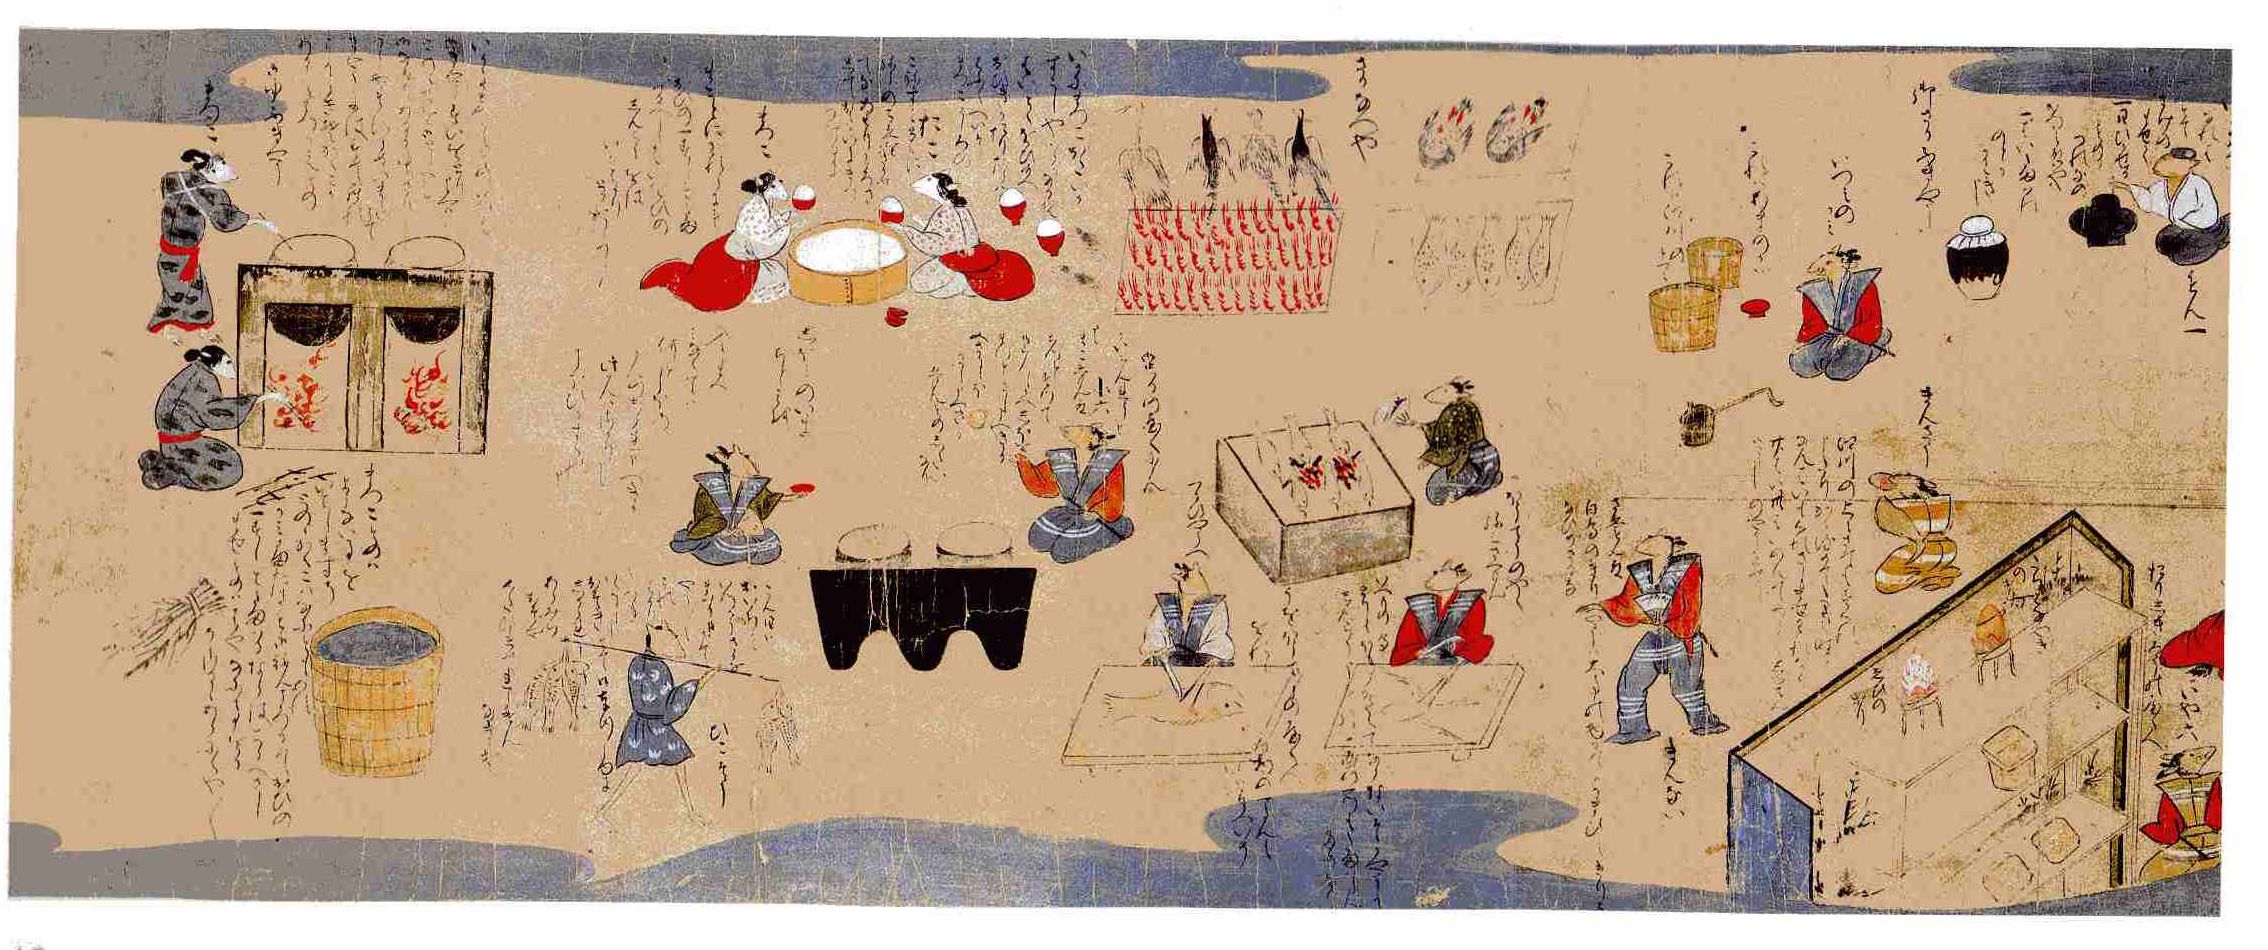 Фрагмент «Нэдзуми соши эмаки» – сцена, где мыши заняты приготовлением блюд на свадьбу. Музей Сантори 